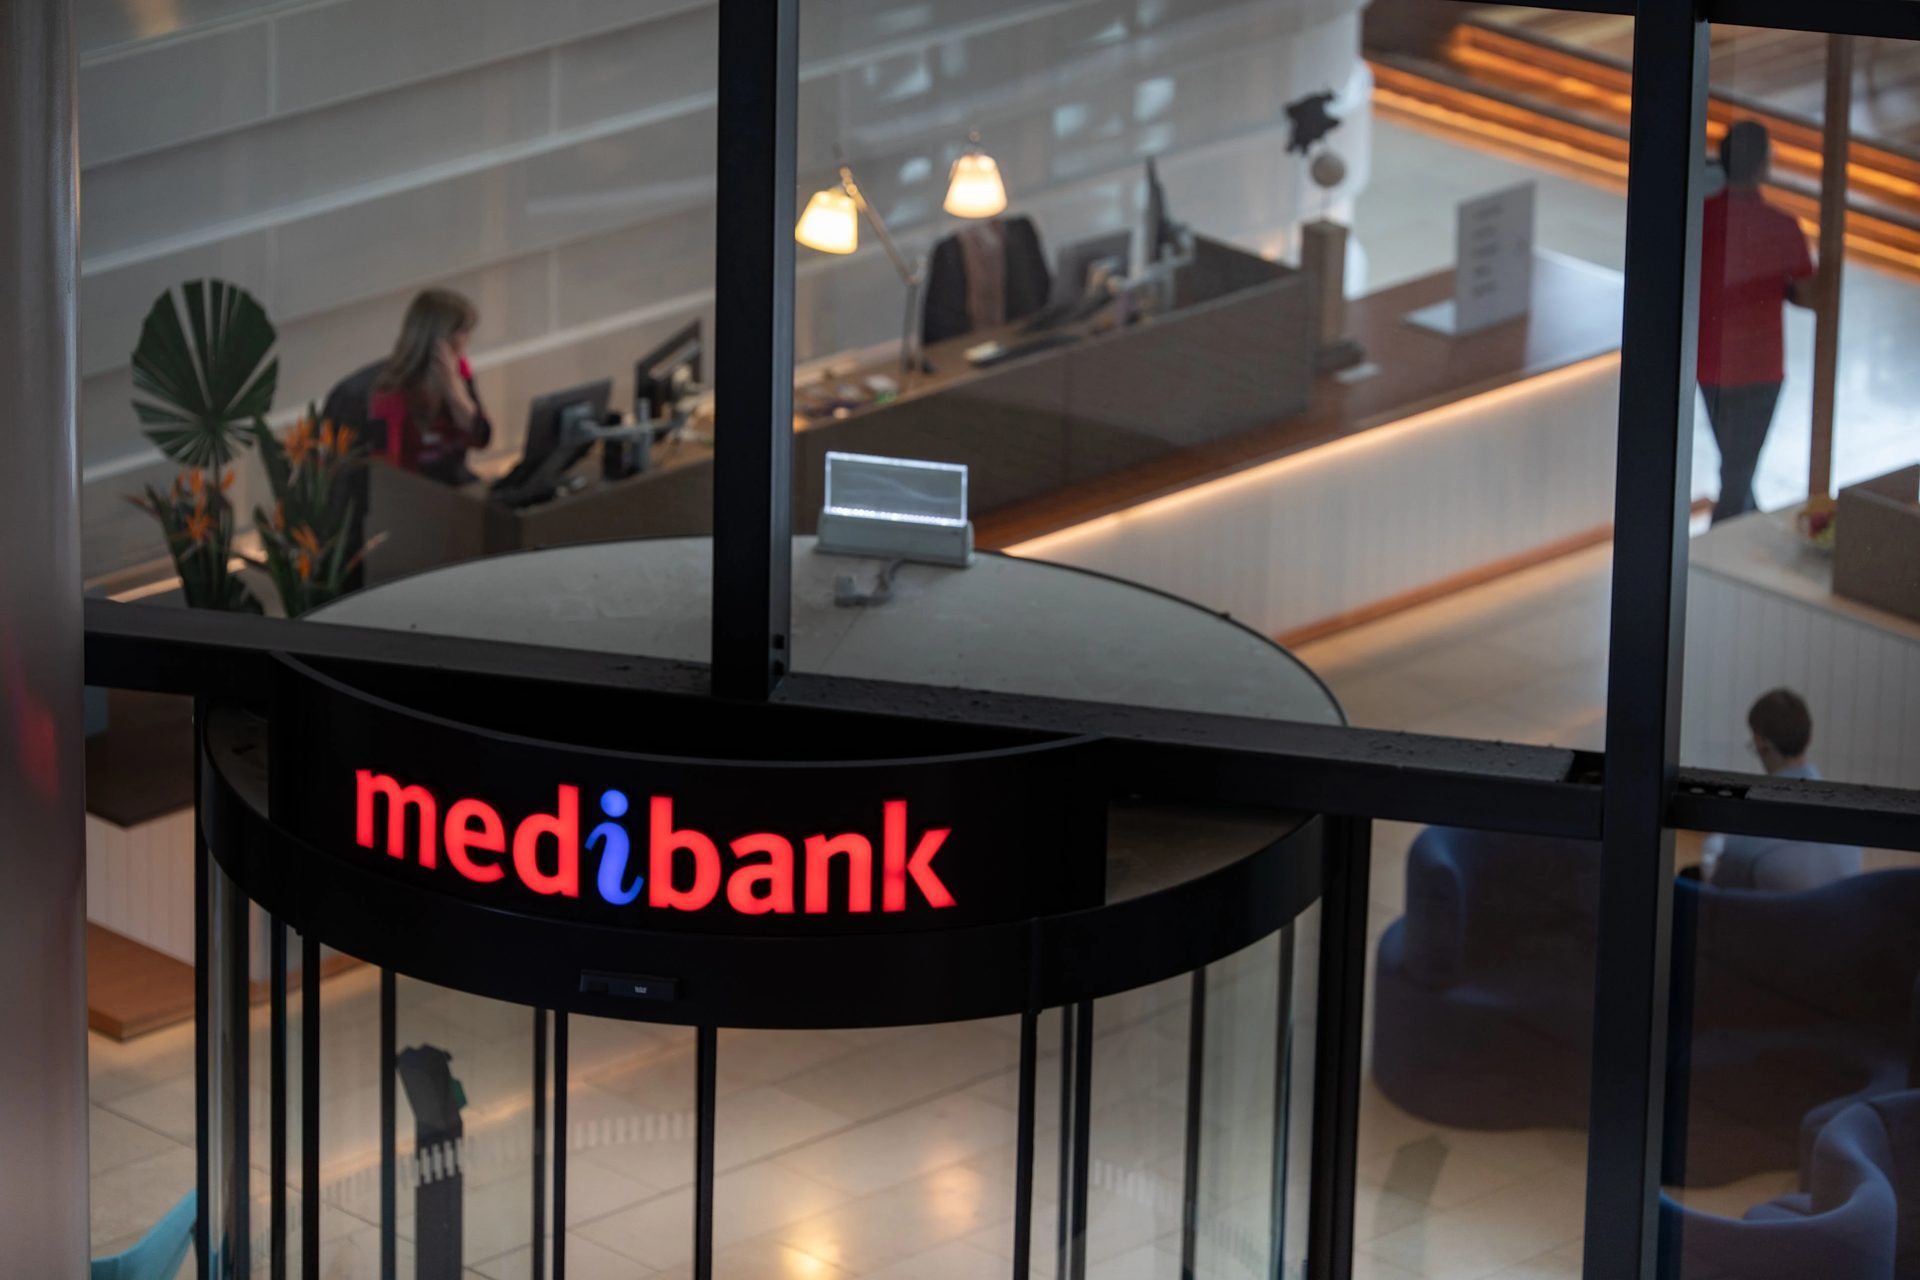 Ação coletiva de violação de dados do Medibank: a compensação pode chegar a US$ 20,000 por pessoa